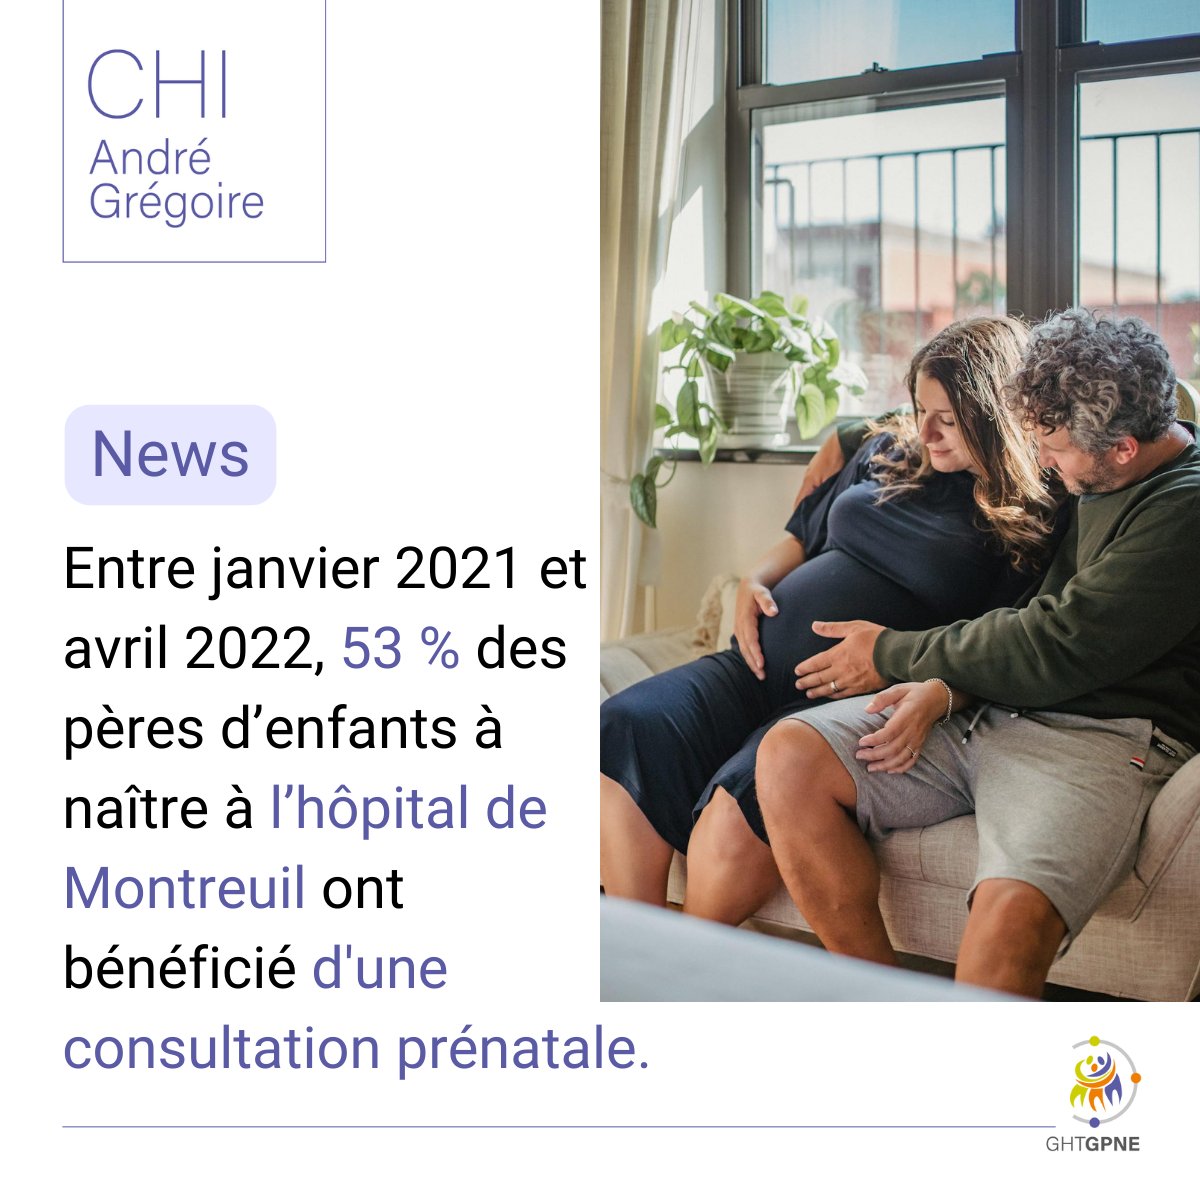 👶[#NEWS #CHIANDREGREGOIRE] 🔎Saviez-vous qu'entre janvier 2021 et avril 2022, 53% des pères d’enfants à naître à l’#hôpital de Montreuil ont bénéficié d'une consultation prénatale ? Tout sur le projet 'PARTAGE' à retrouver dans le #BEH @SantePubliqueFr 👇 santepubliquefrance.fr/docs/bulletin-…